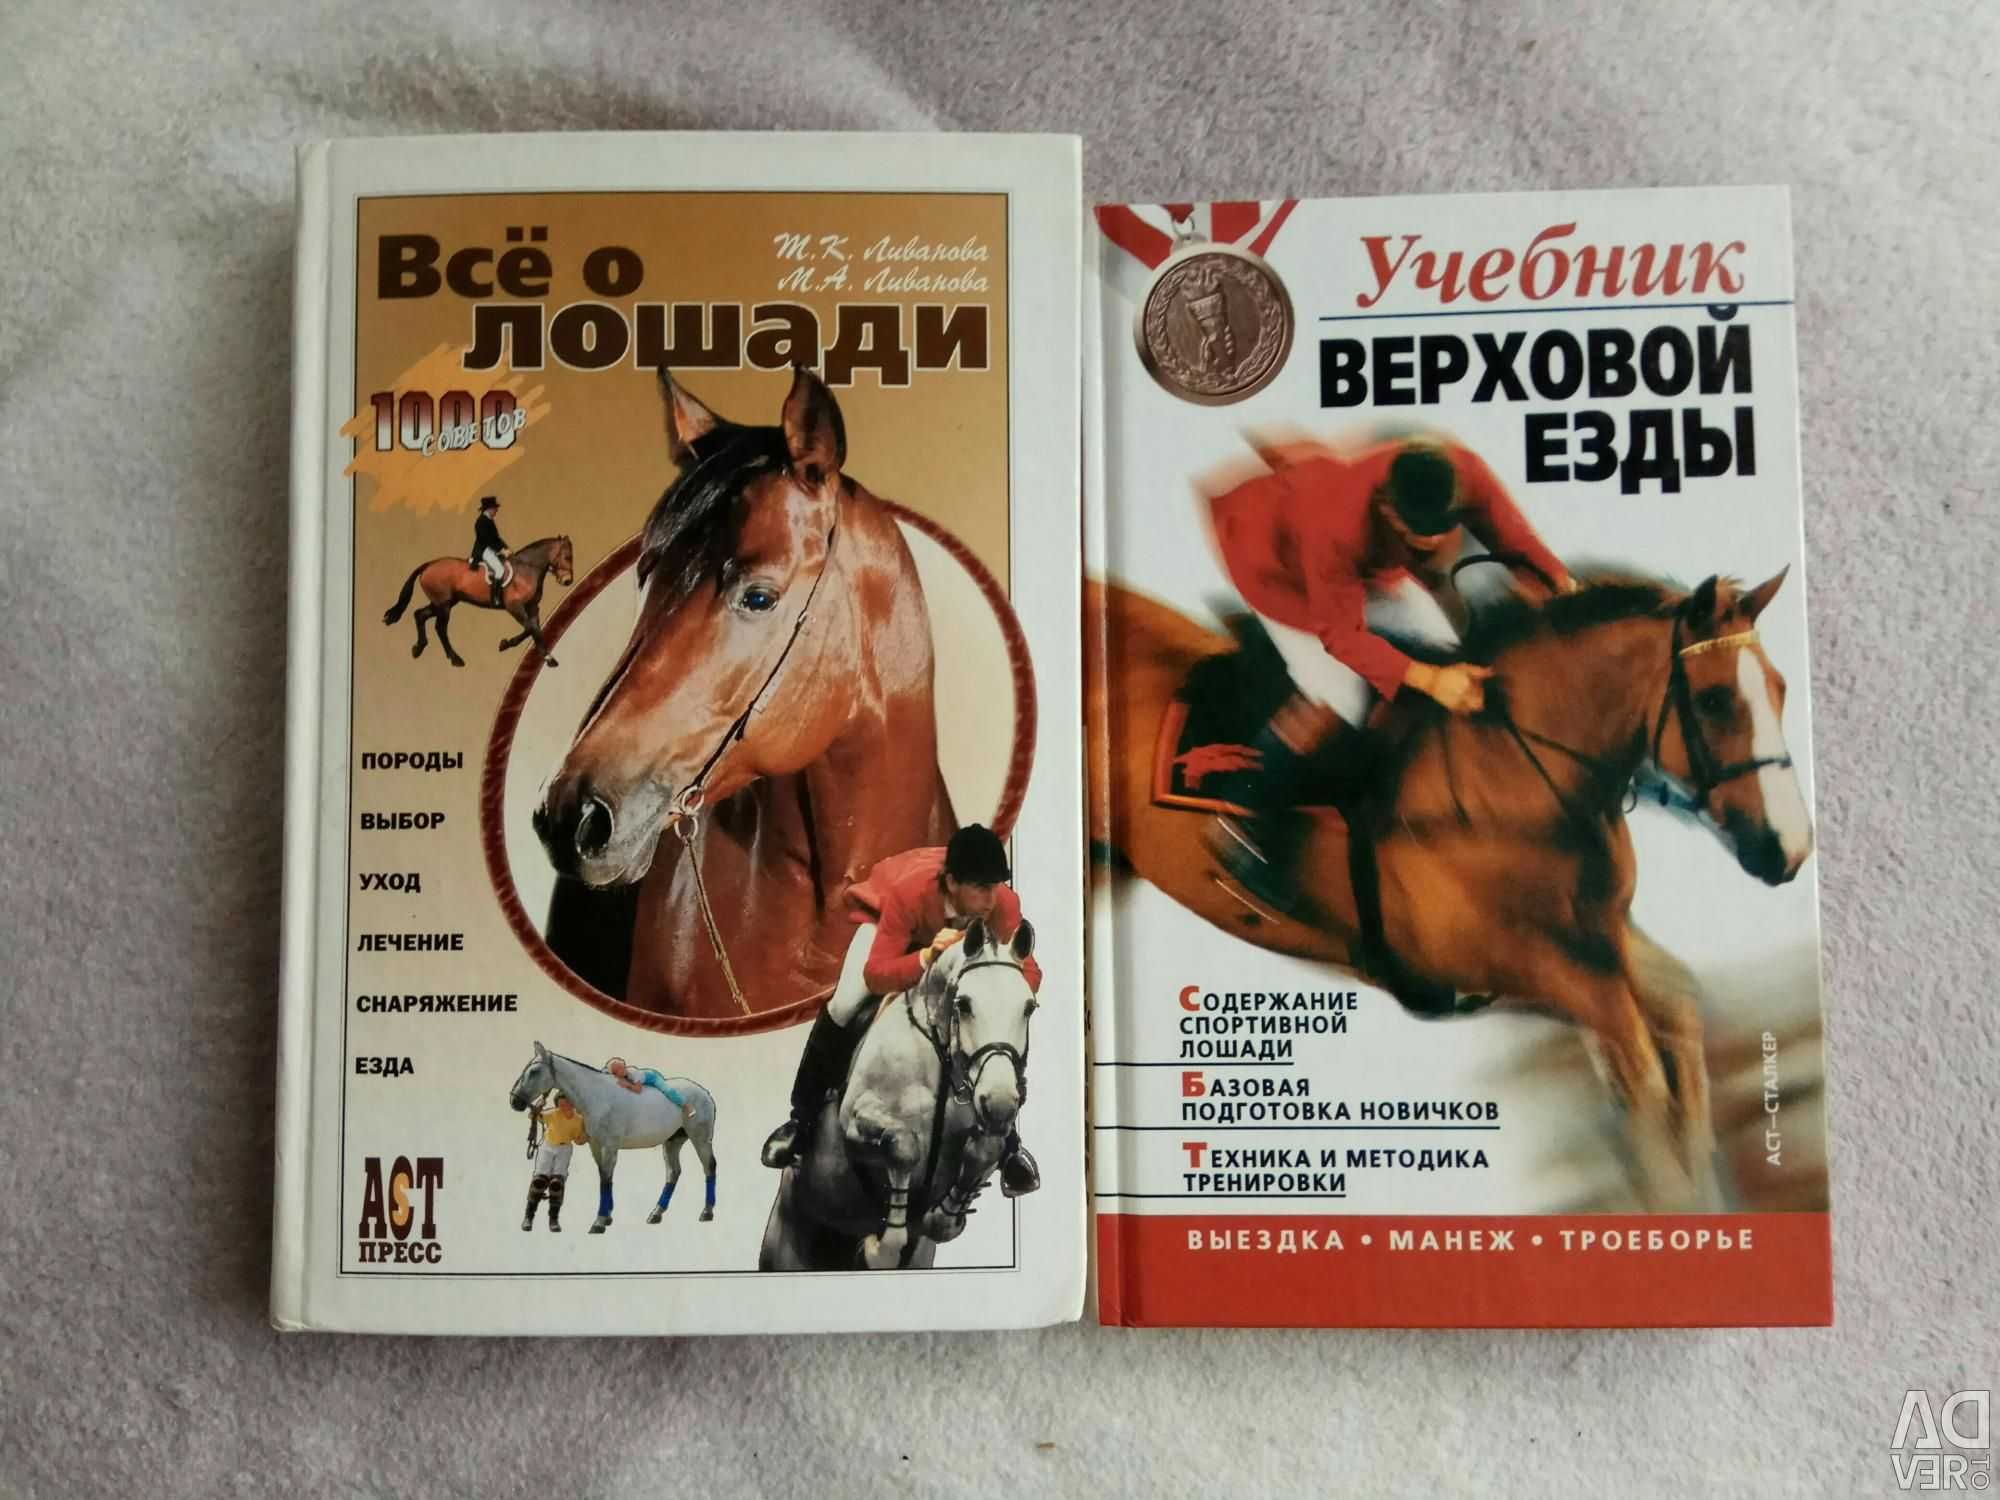 Верховая езда на лошадях: польза и правила езды, экипировка, фото